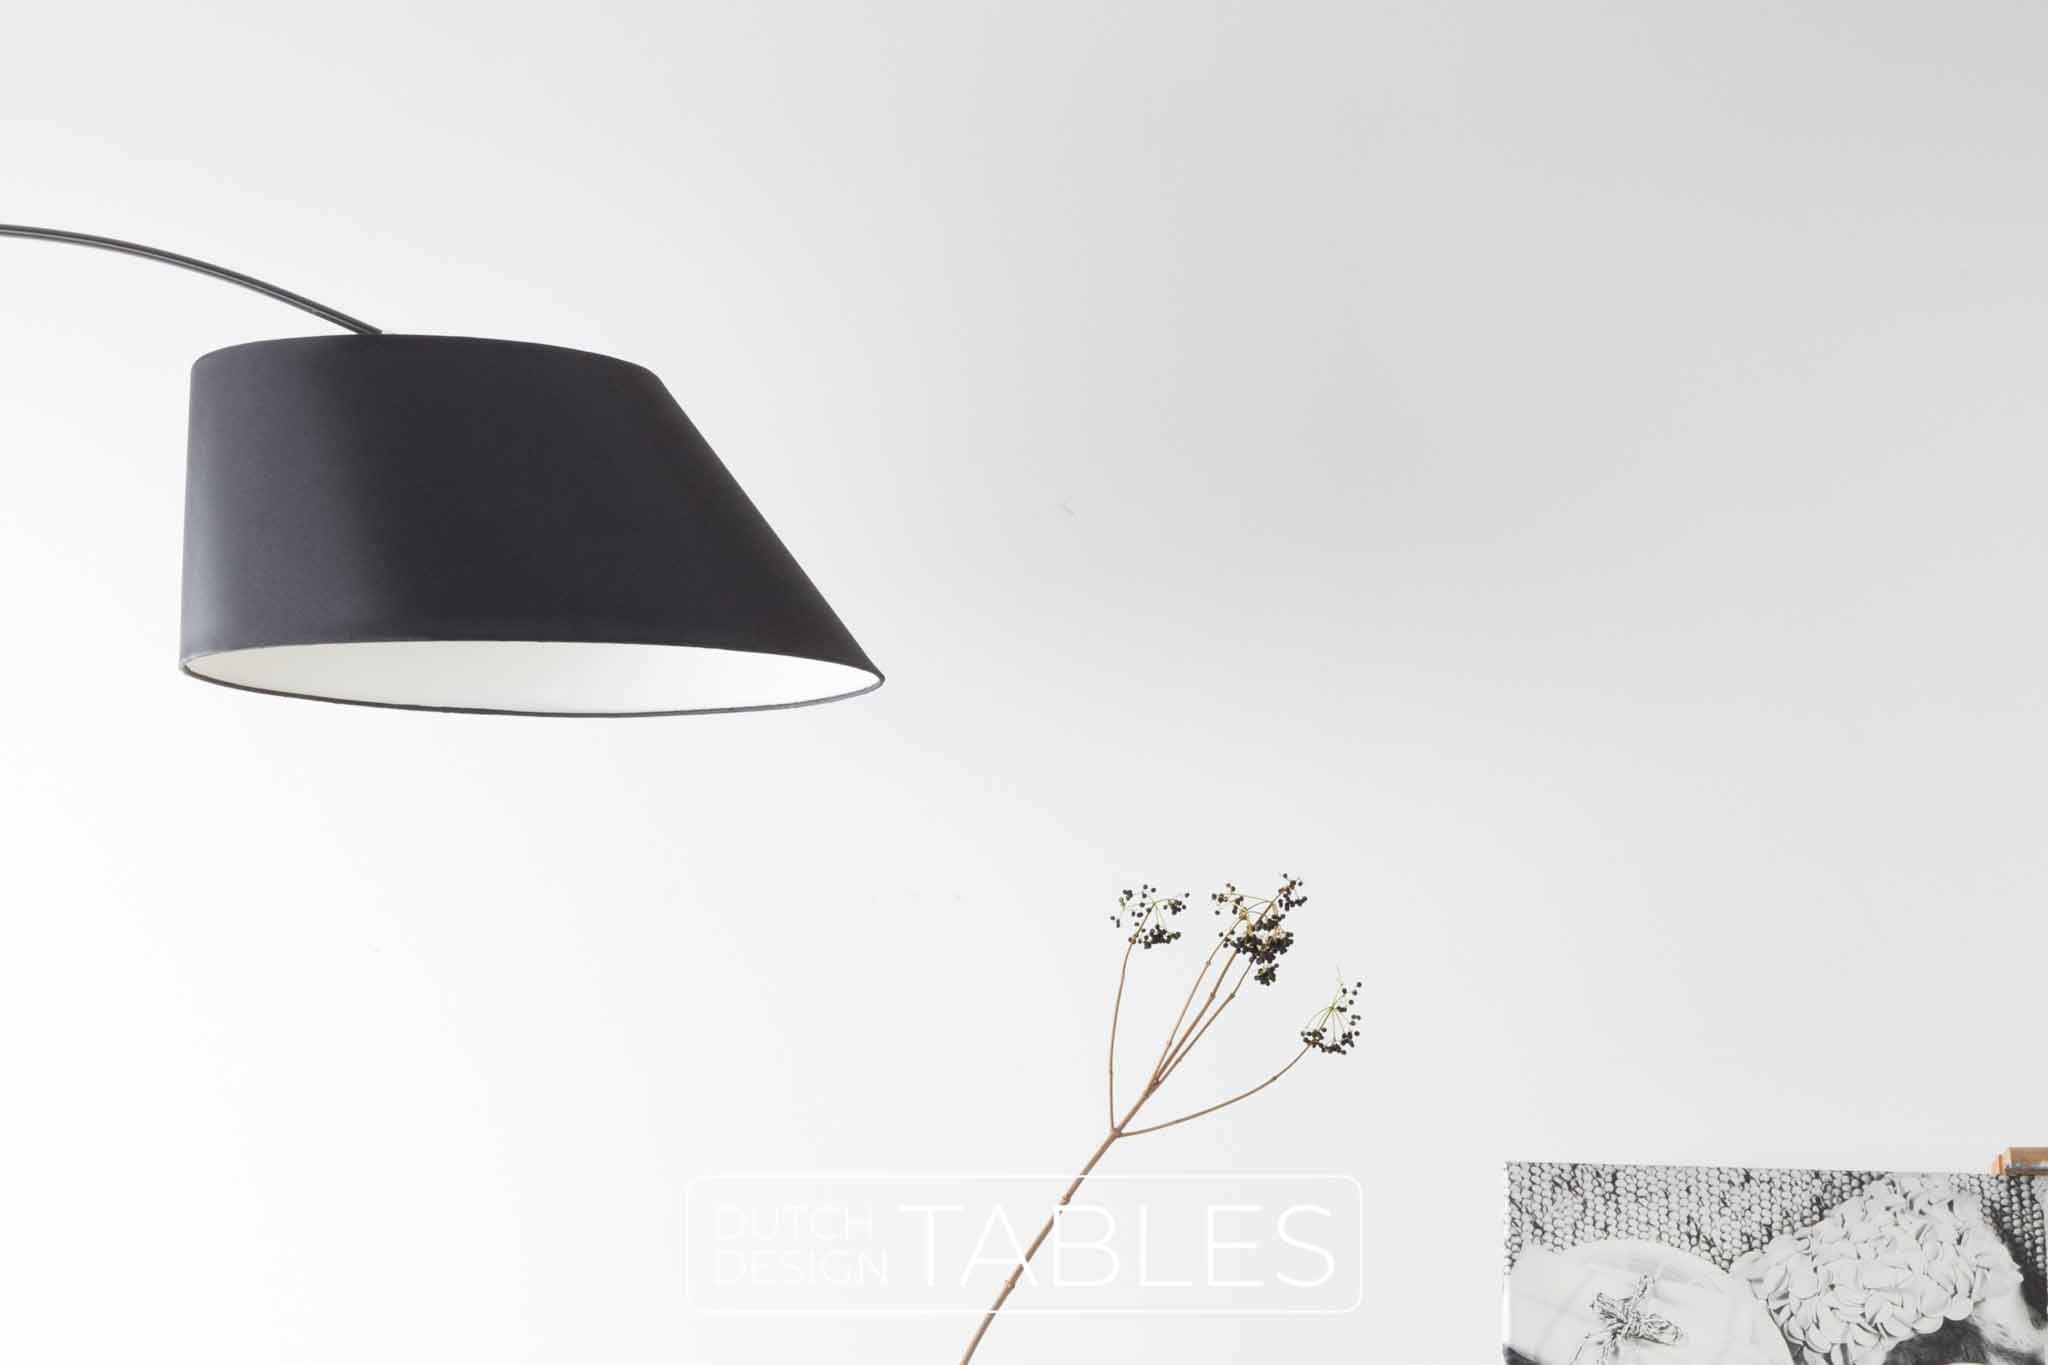 lezer Haalbaarheid Hijgend Vloerlamp Zuiver Arc | Ophangen is niet meer nodig met een booglamp! –  Dutch Design Tables